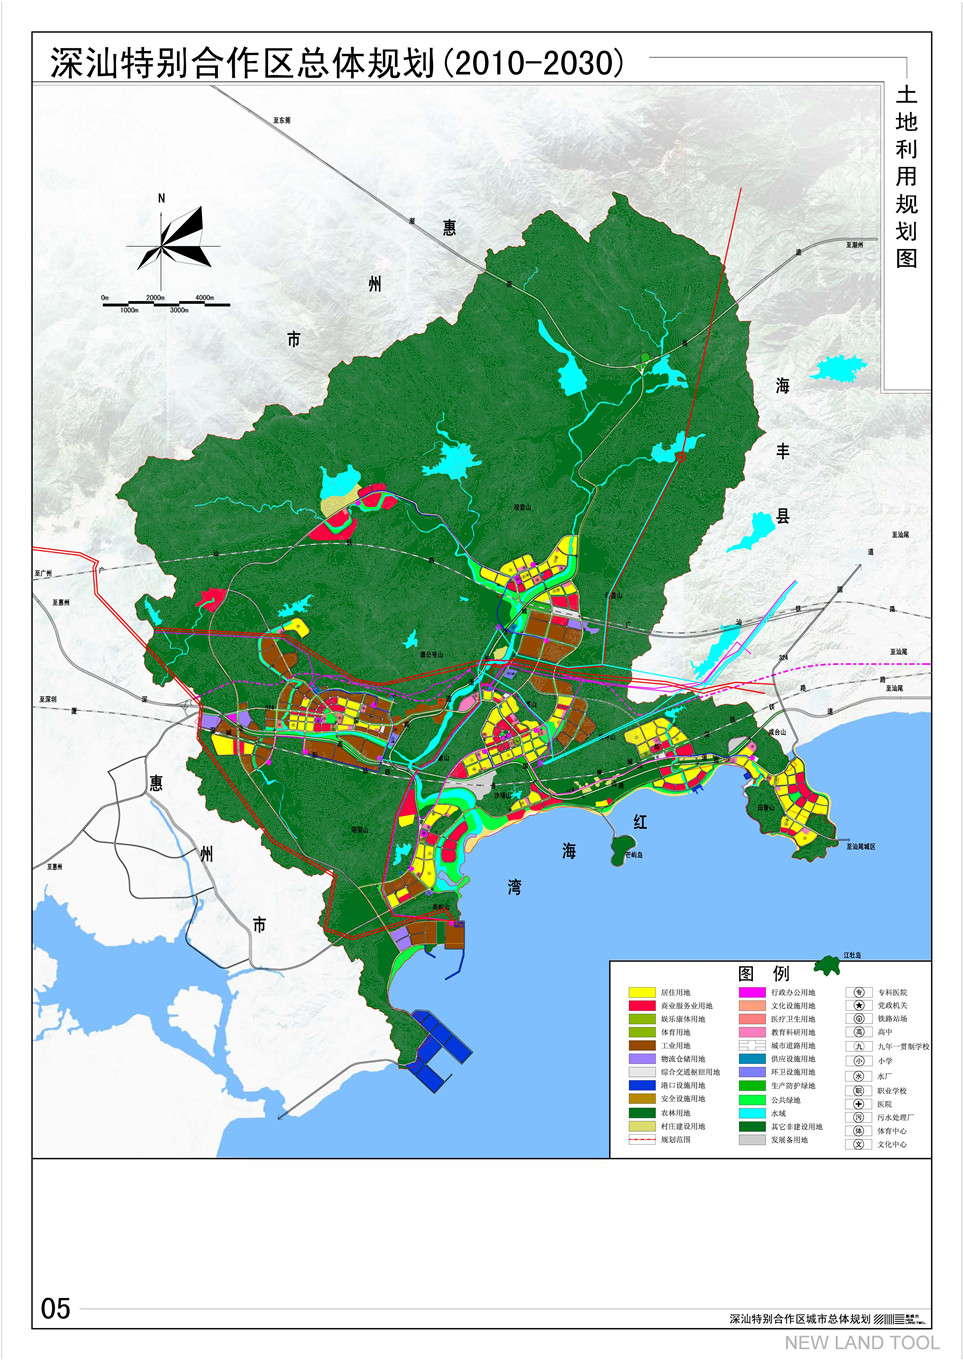 深汕特别合作区综合发展规划及城市总体规划(2010-2030)